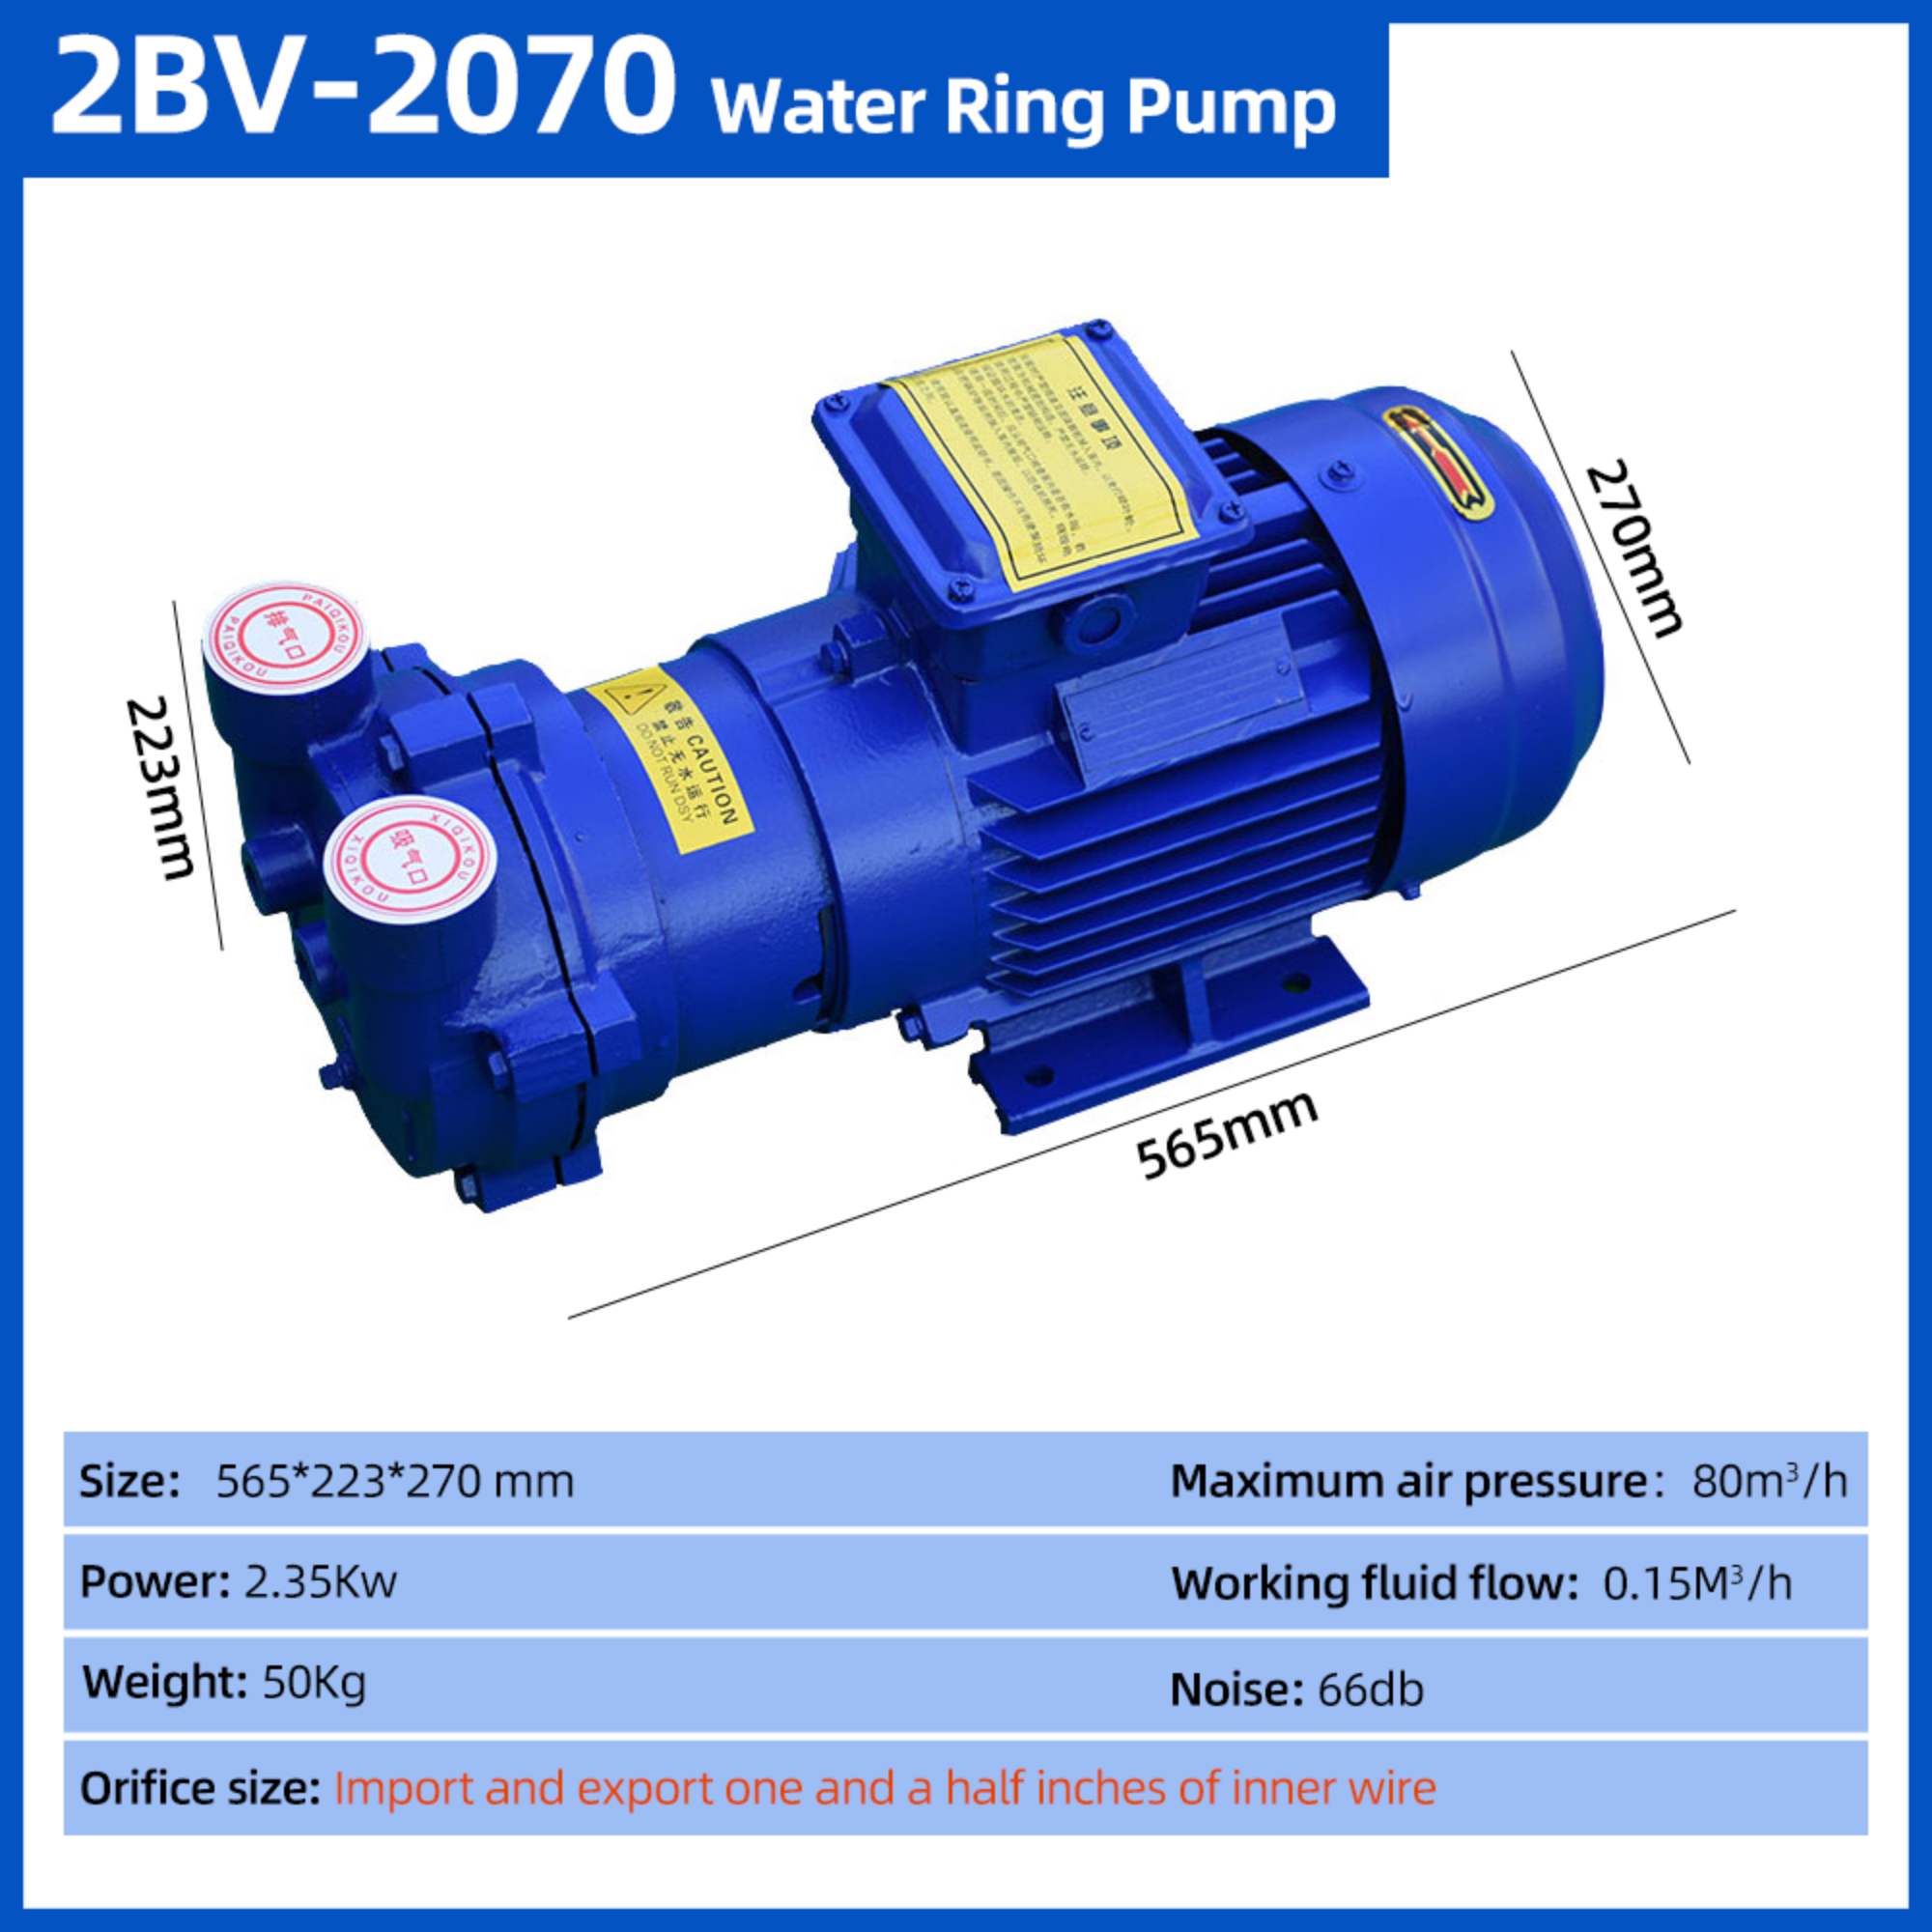 Bomba de vácuo industrial do anel da água do compressor da bomba de vácuo da circulação de água do alto vácuo 2BV-2070